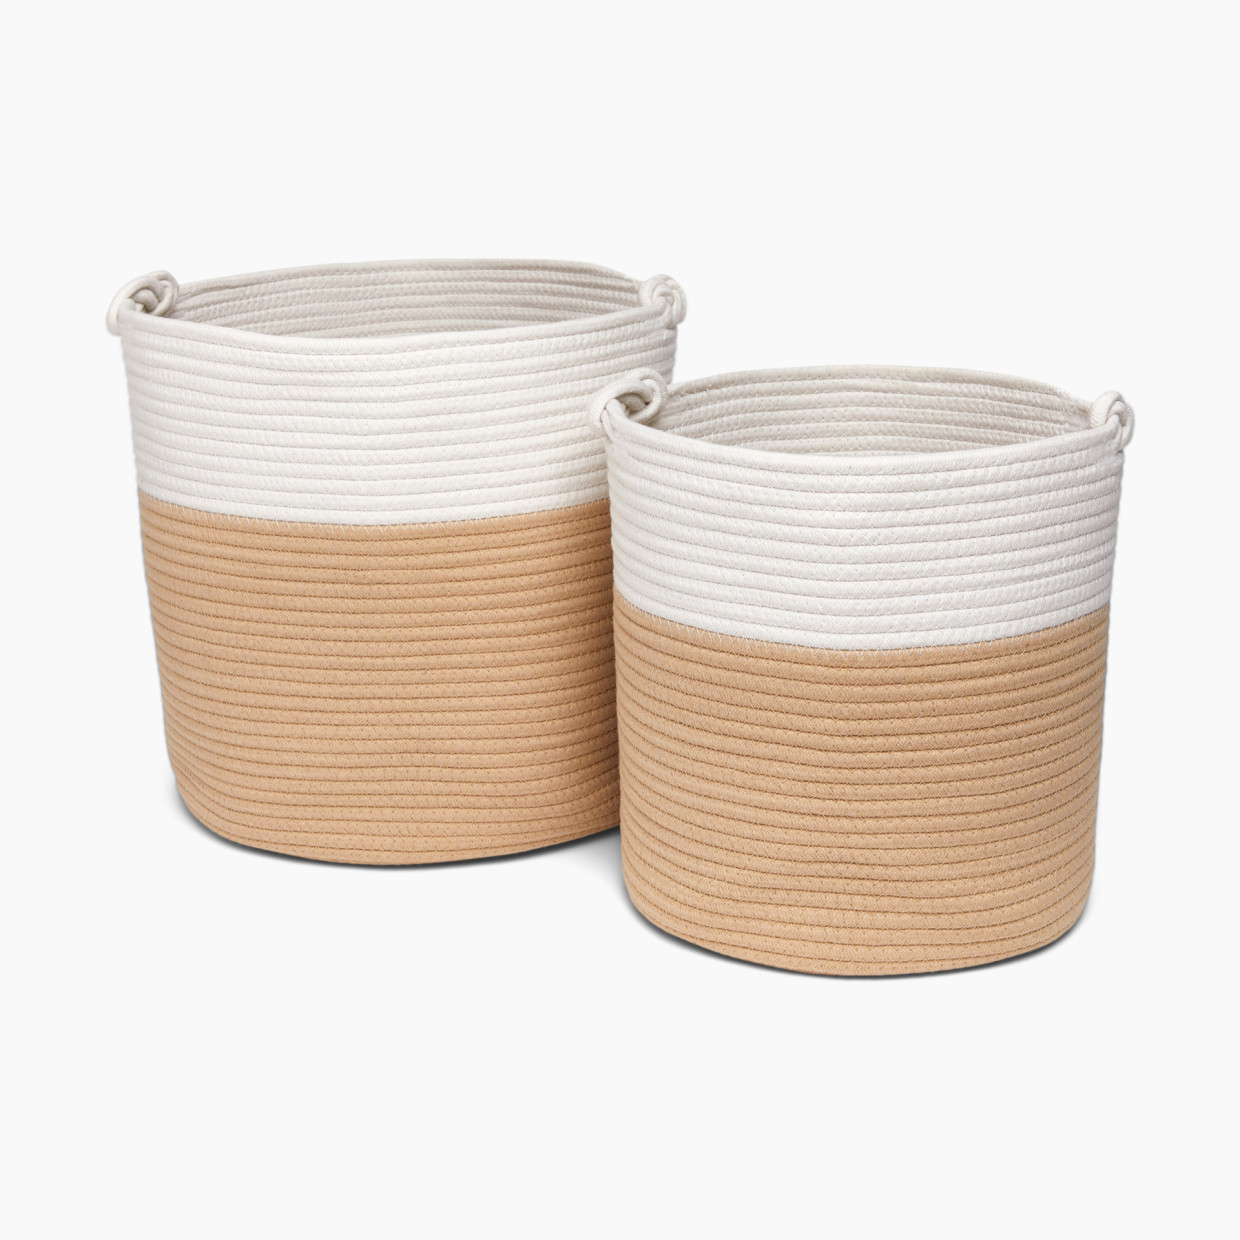 Sprucely Large & Medium Rope Basket Set - Oat, Large/Medium.